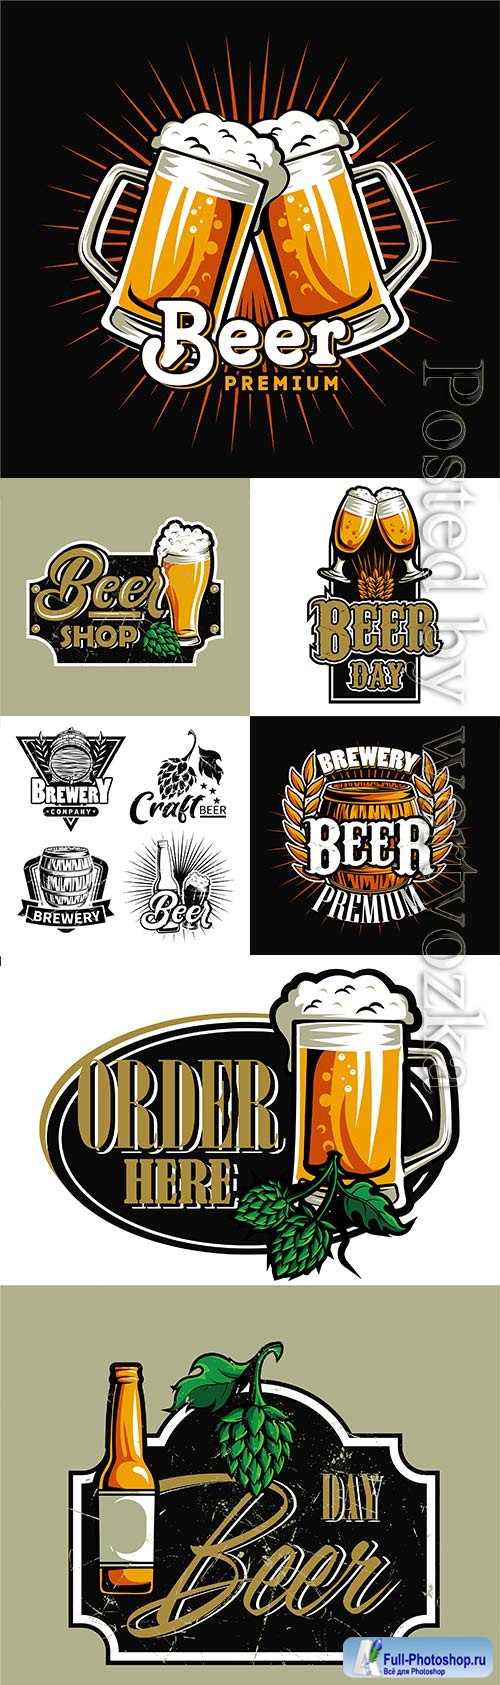 Set of beer logos for design in vector